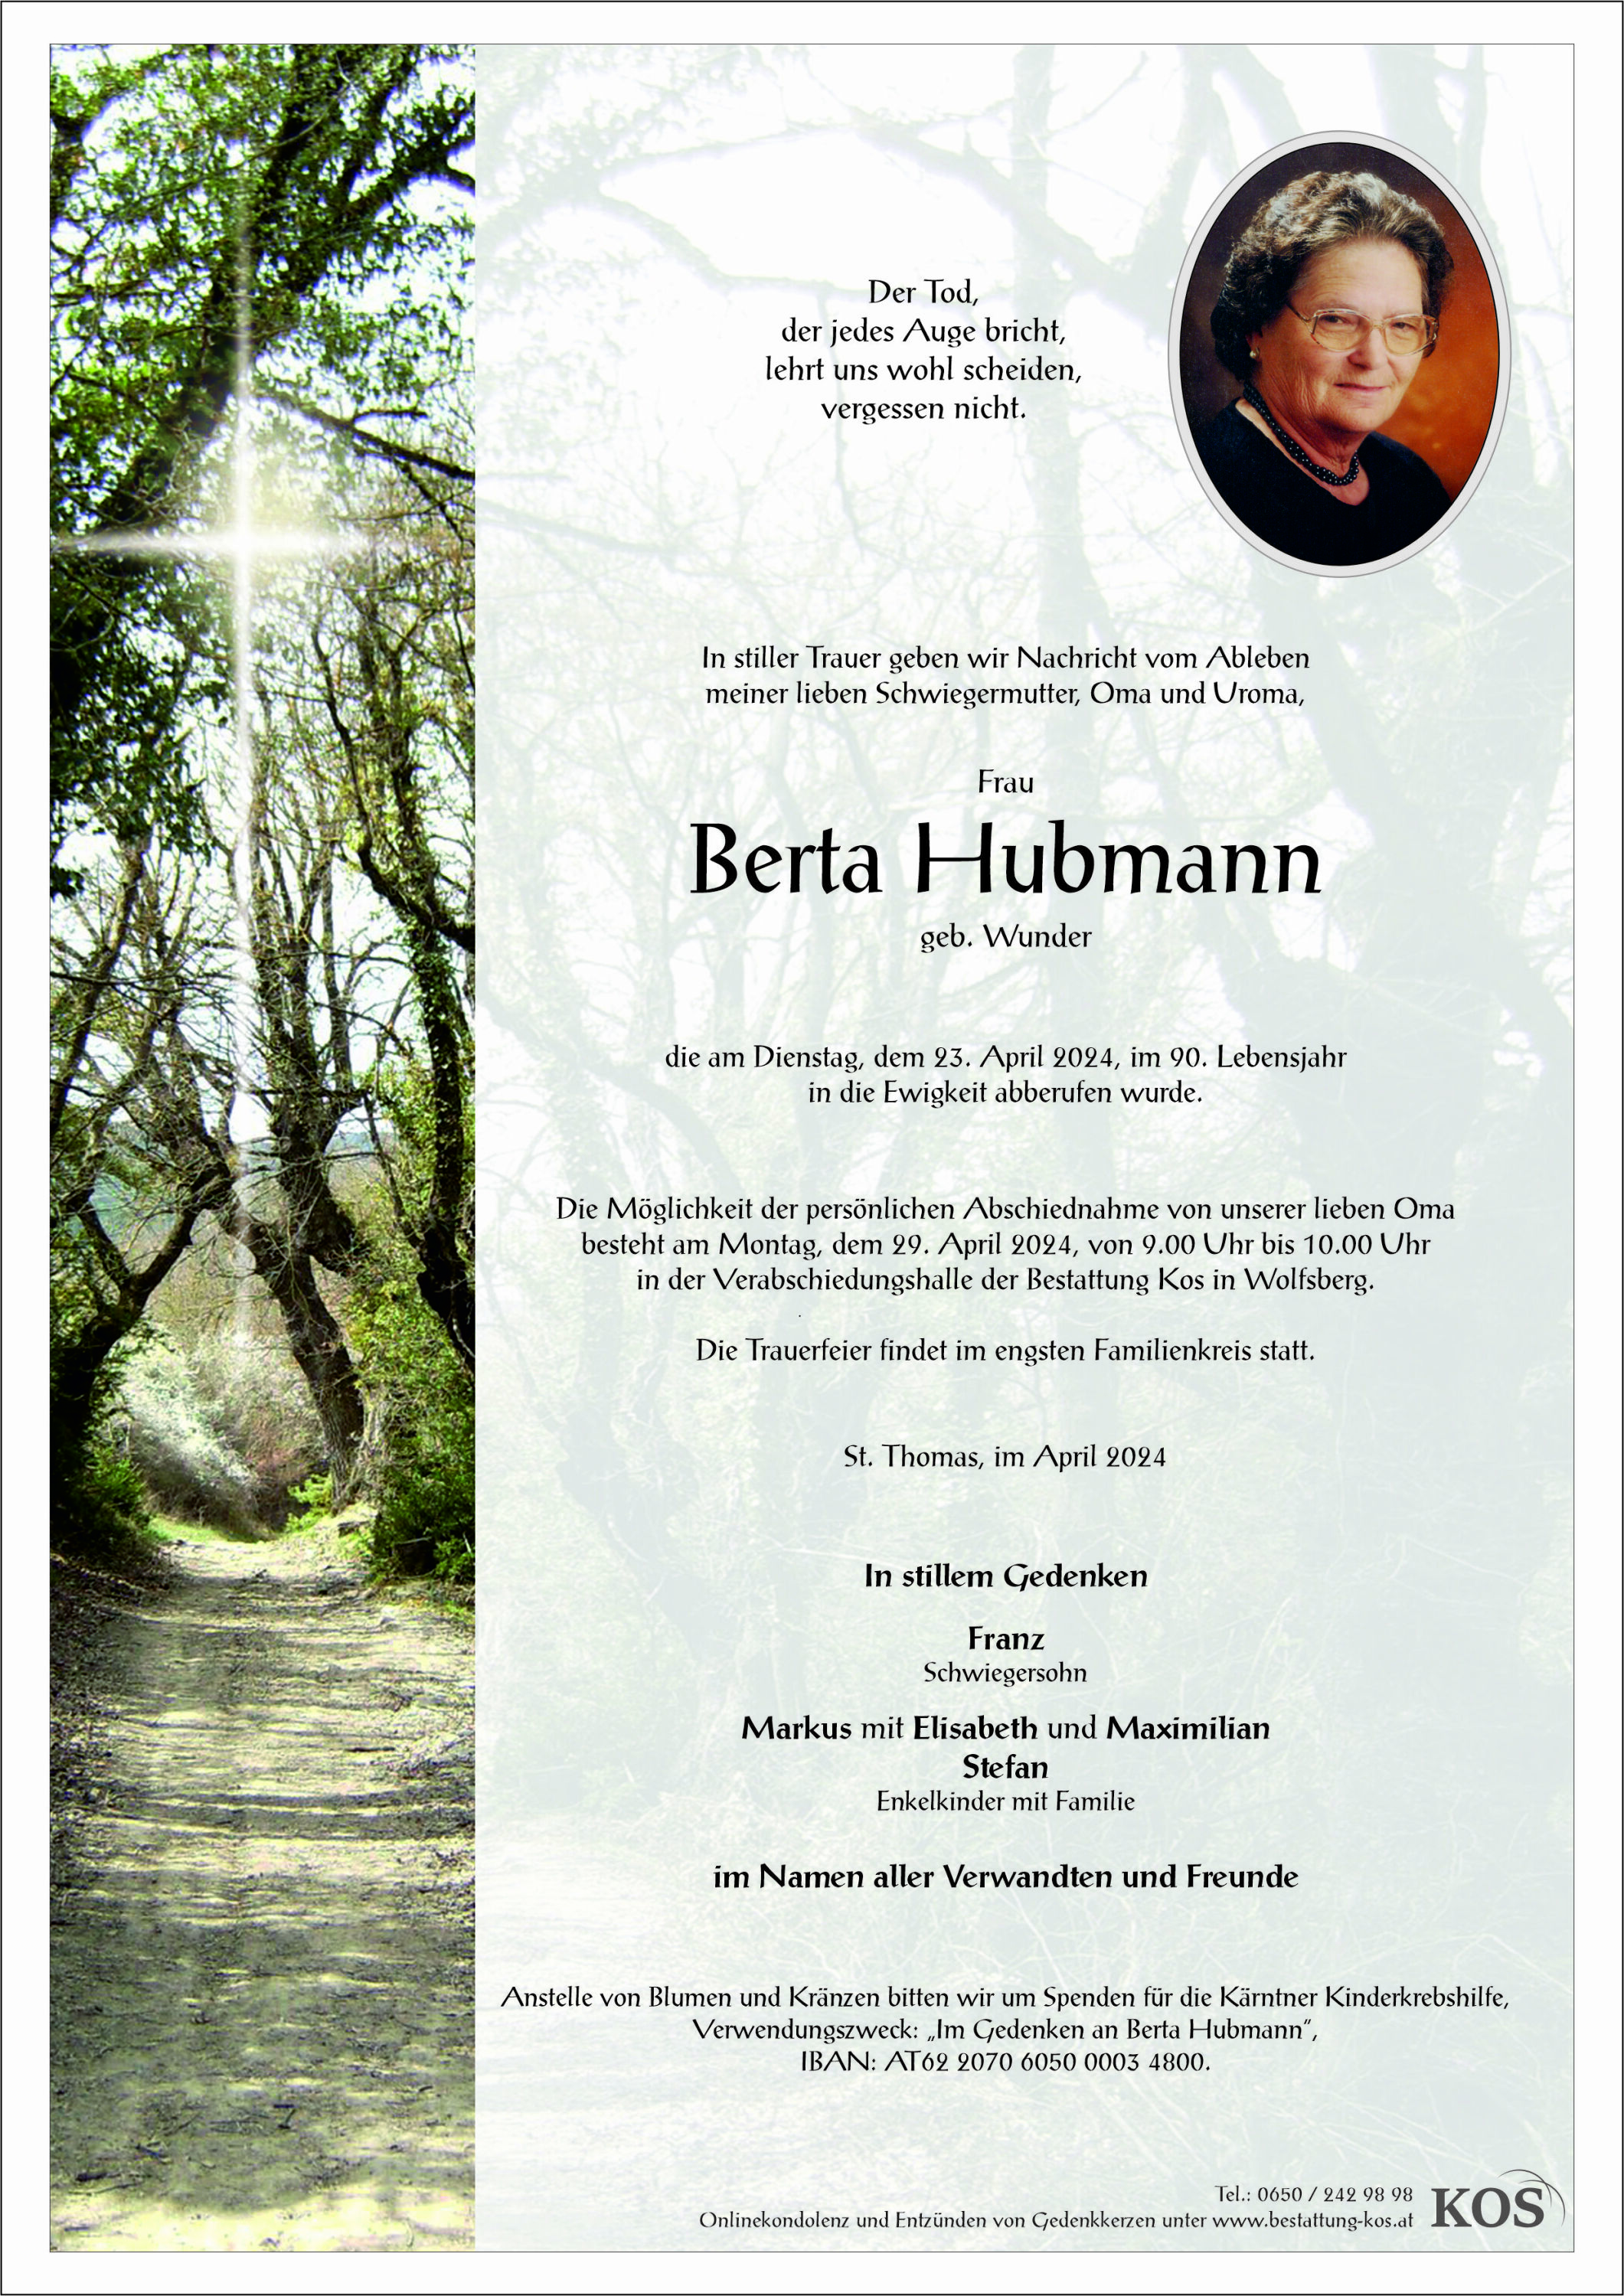 Berta Hubmann